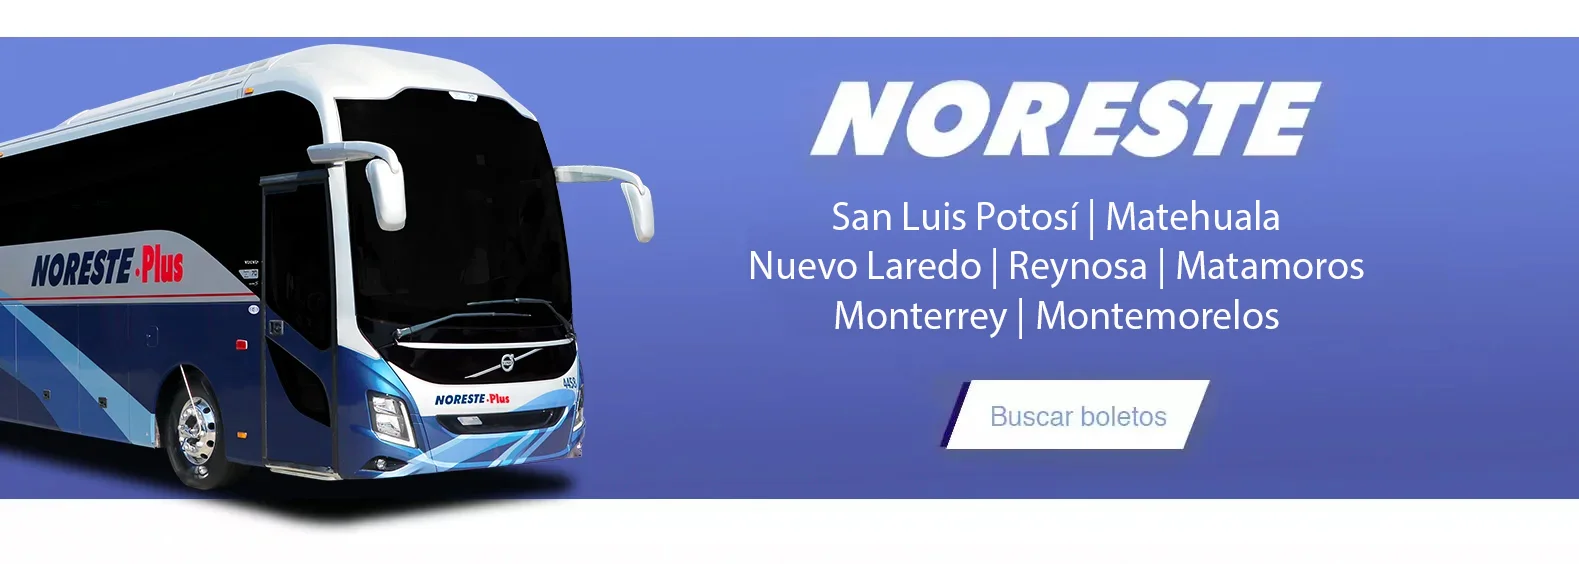 Venta de boletos de autobus Noreste para viajar a San Luis Potosi, Matehuala, Nuevo Laredo, Reynosa, Matamoros, Monterrey y Montemorelos.